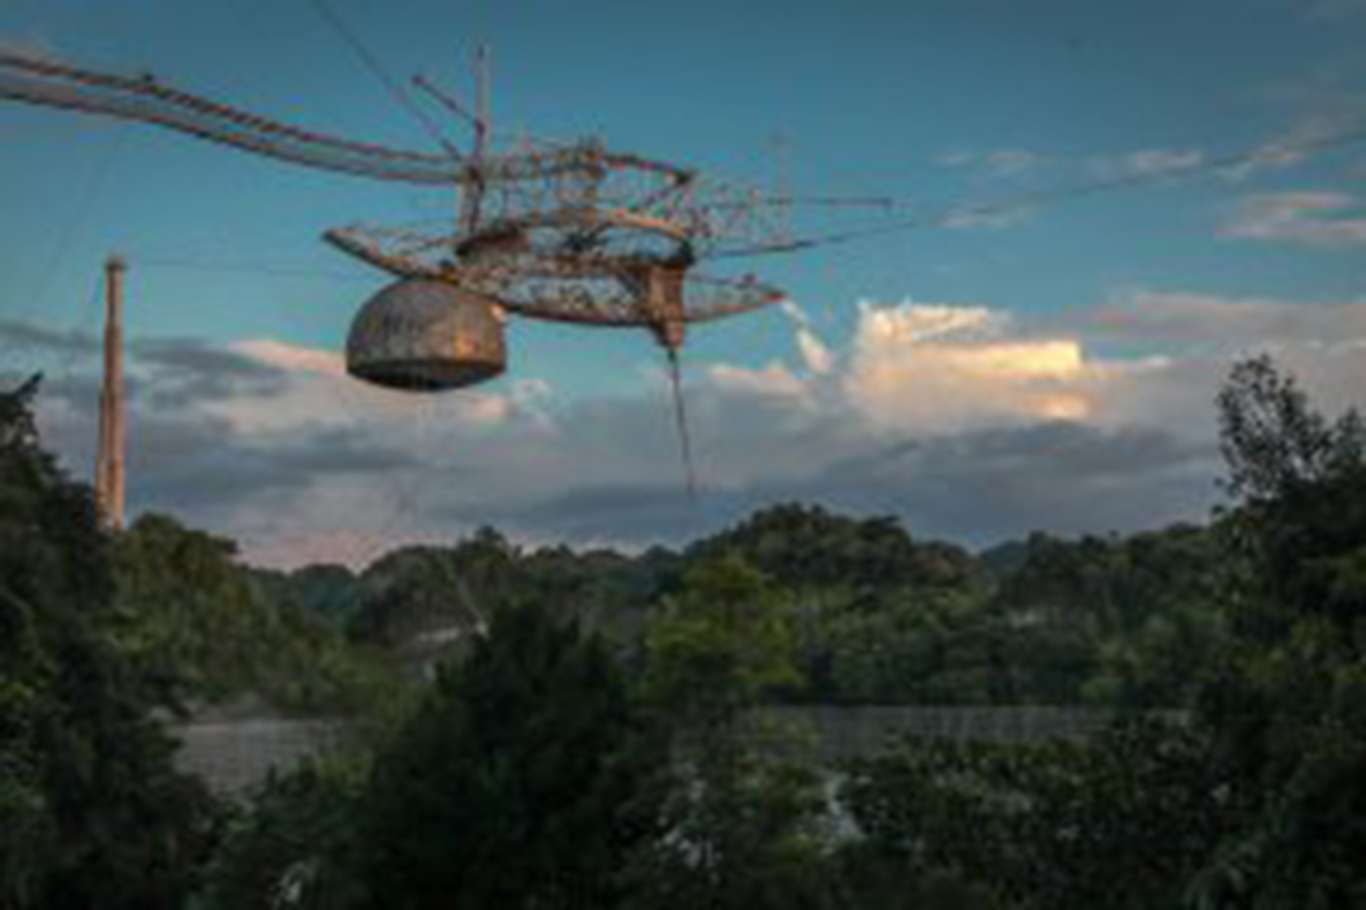 57 yıl faaliyette olan dünyanın en büyük teleskoplarından Arecibo çöktü